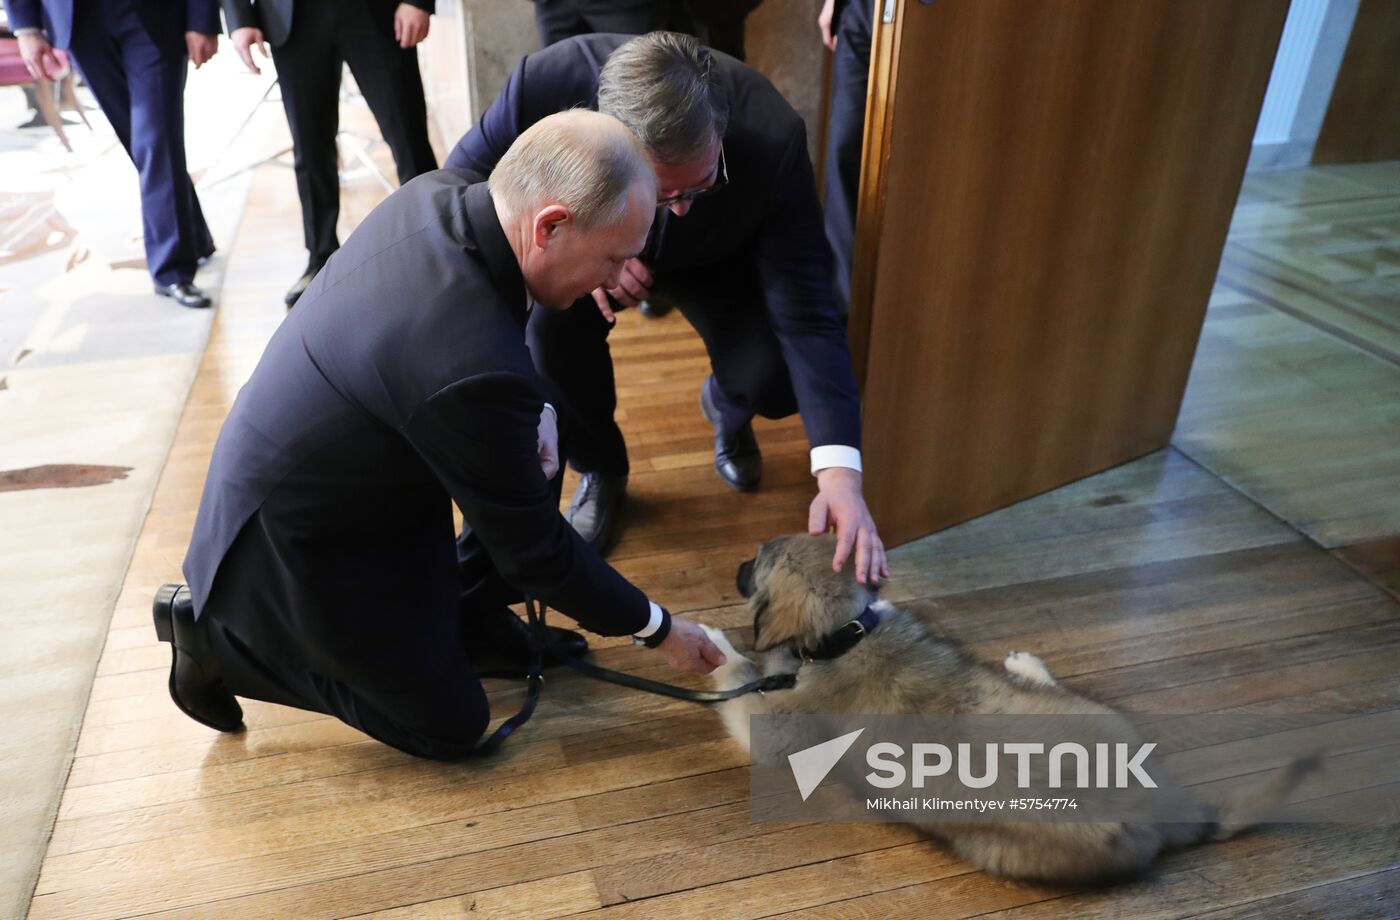 Vladimir Putin's official visit to Serbia